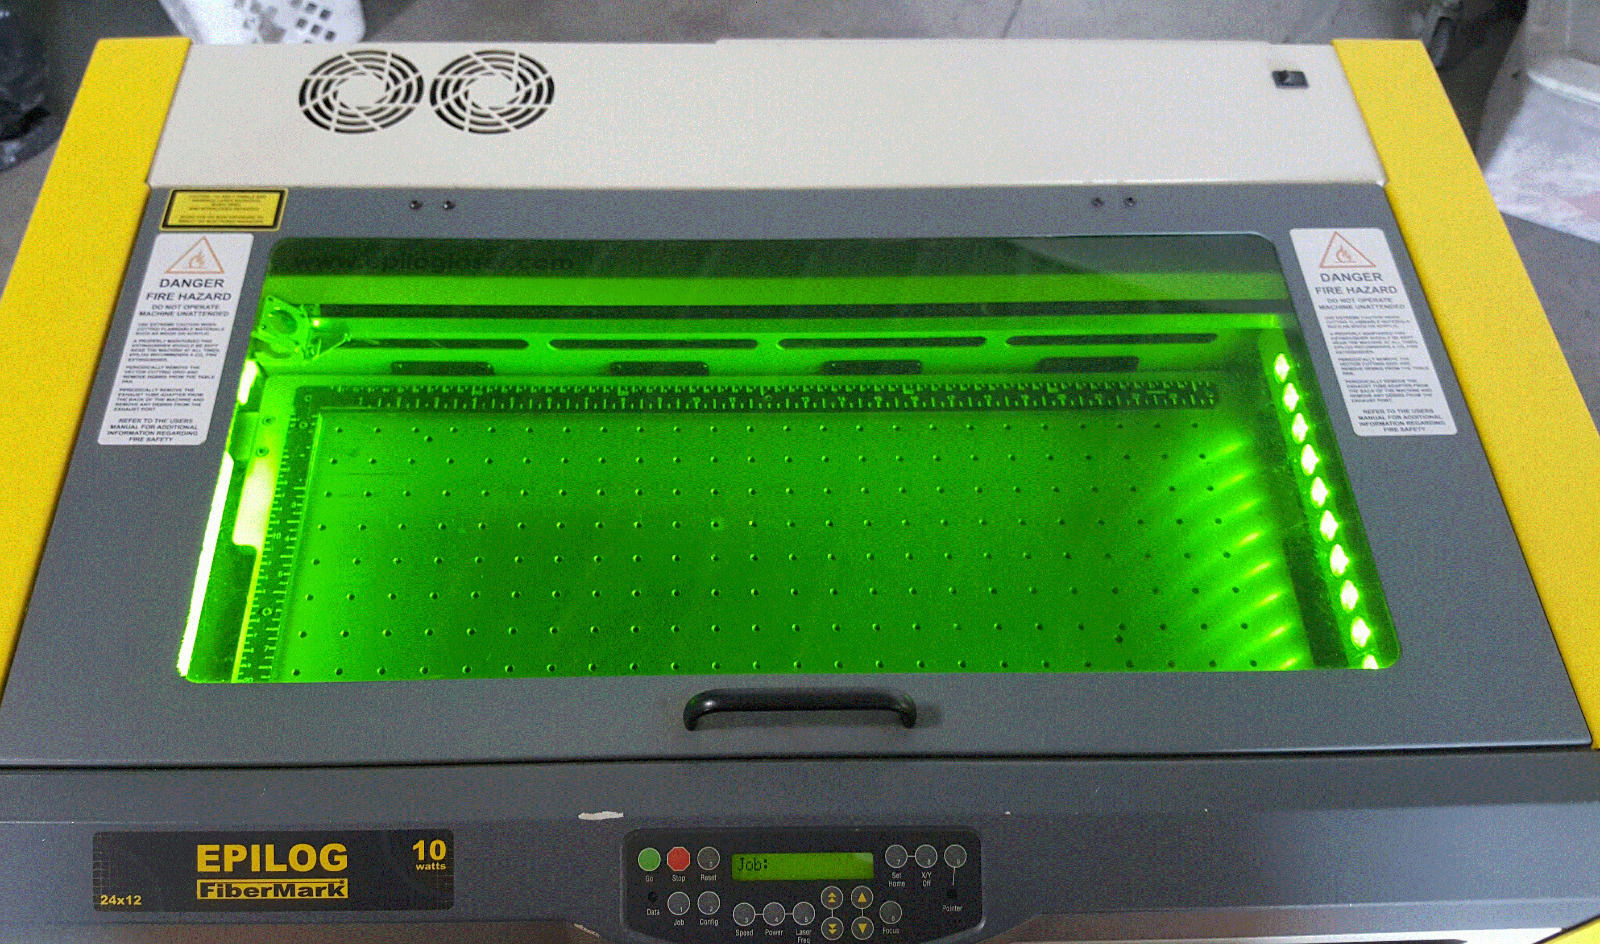 Photo Epilog FiberMark with 24x12 bed 10 watt laser